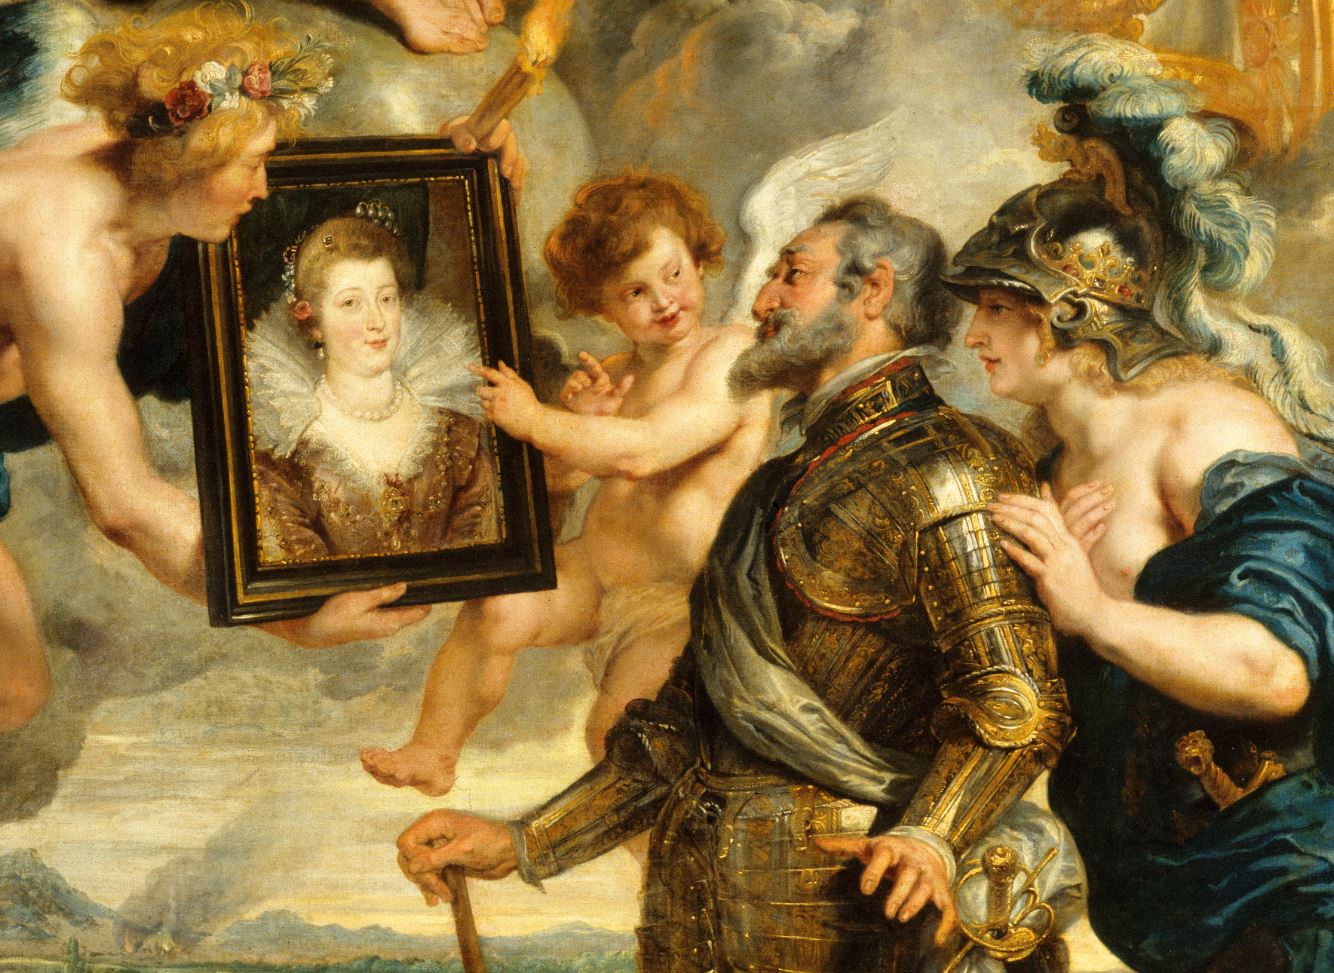 Pierre Paul Rubens, Henri IV reçoit le portrait de Marie de Médicis (détail) © RMN-GP (Musée du Louvre) / René-Gabriel Ojéda / Thierry Le Mage